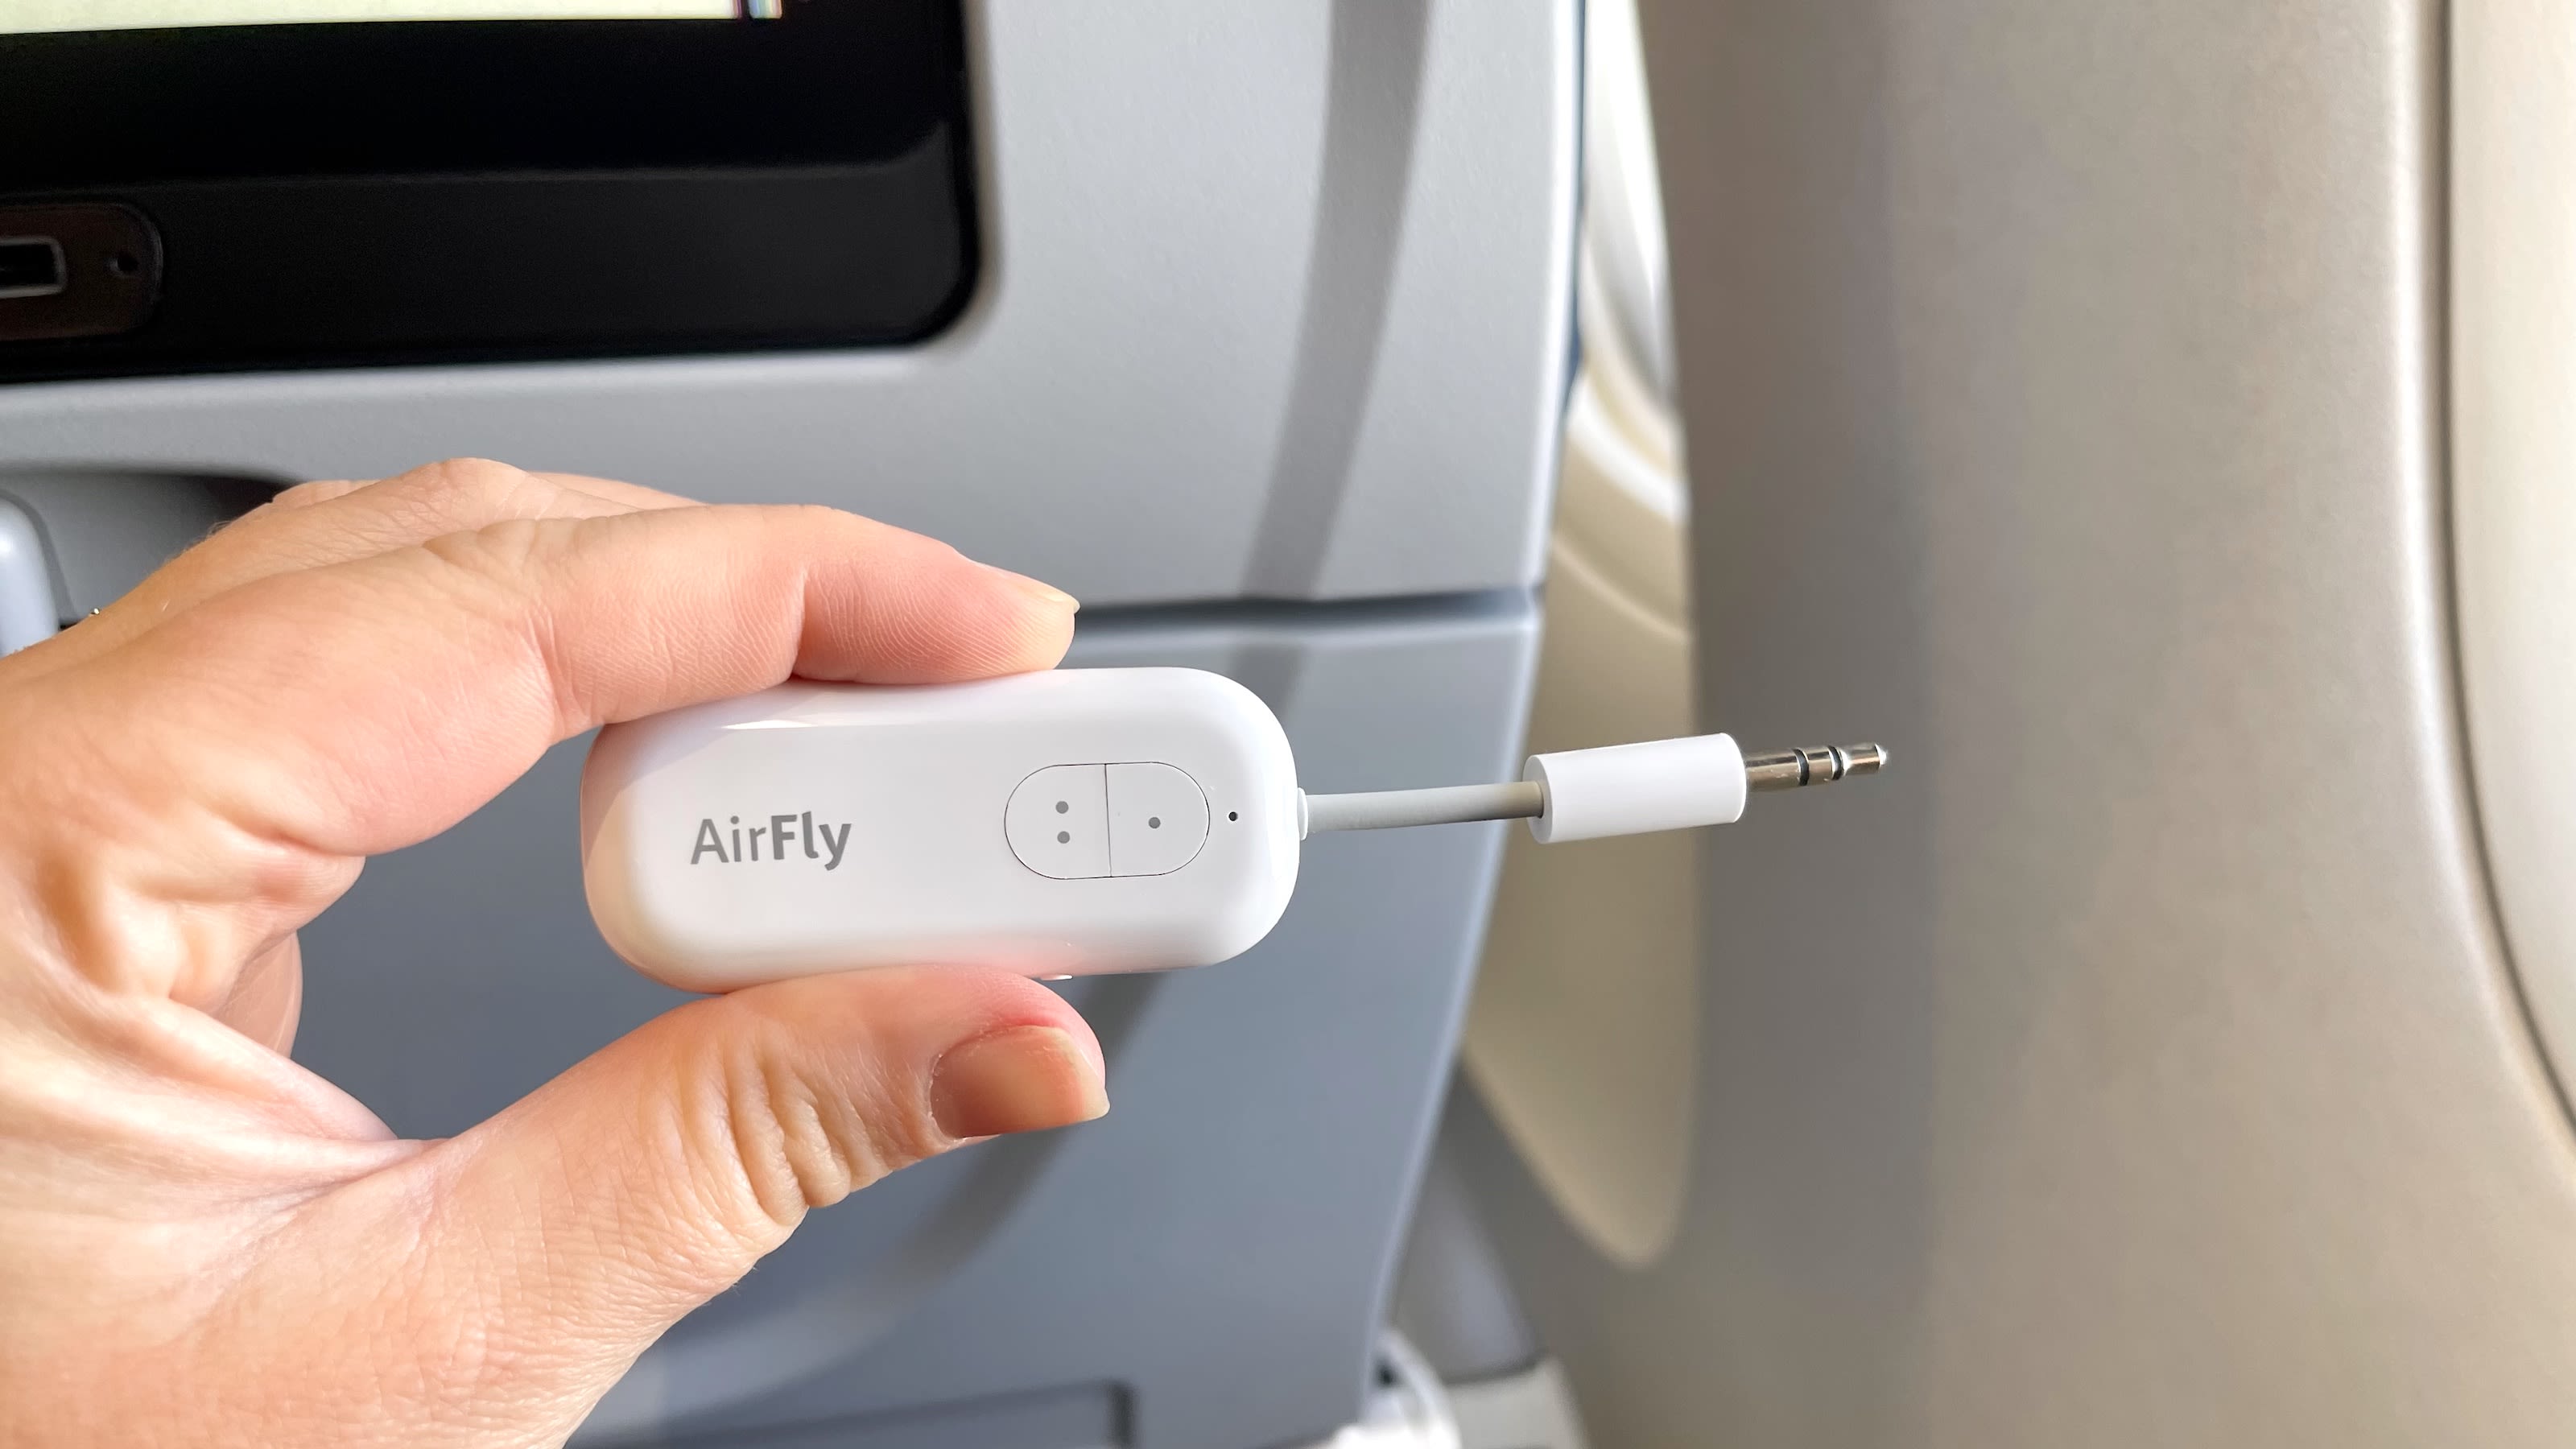 Bloeien Mijnenveld Onafhankelijk AirFly Duo Bluetooth adapter: Connect wireless headphones to your plane |  CNN Underscored